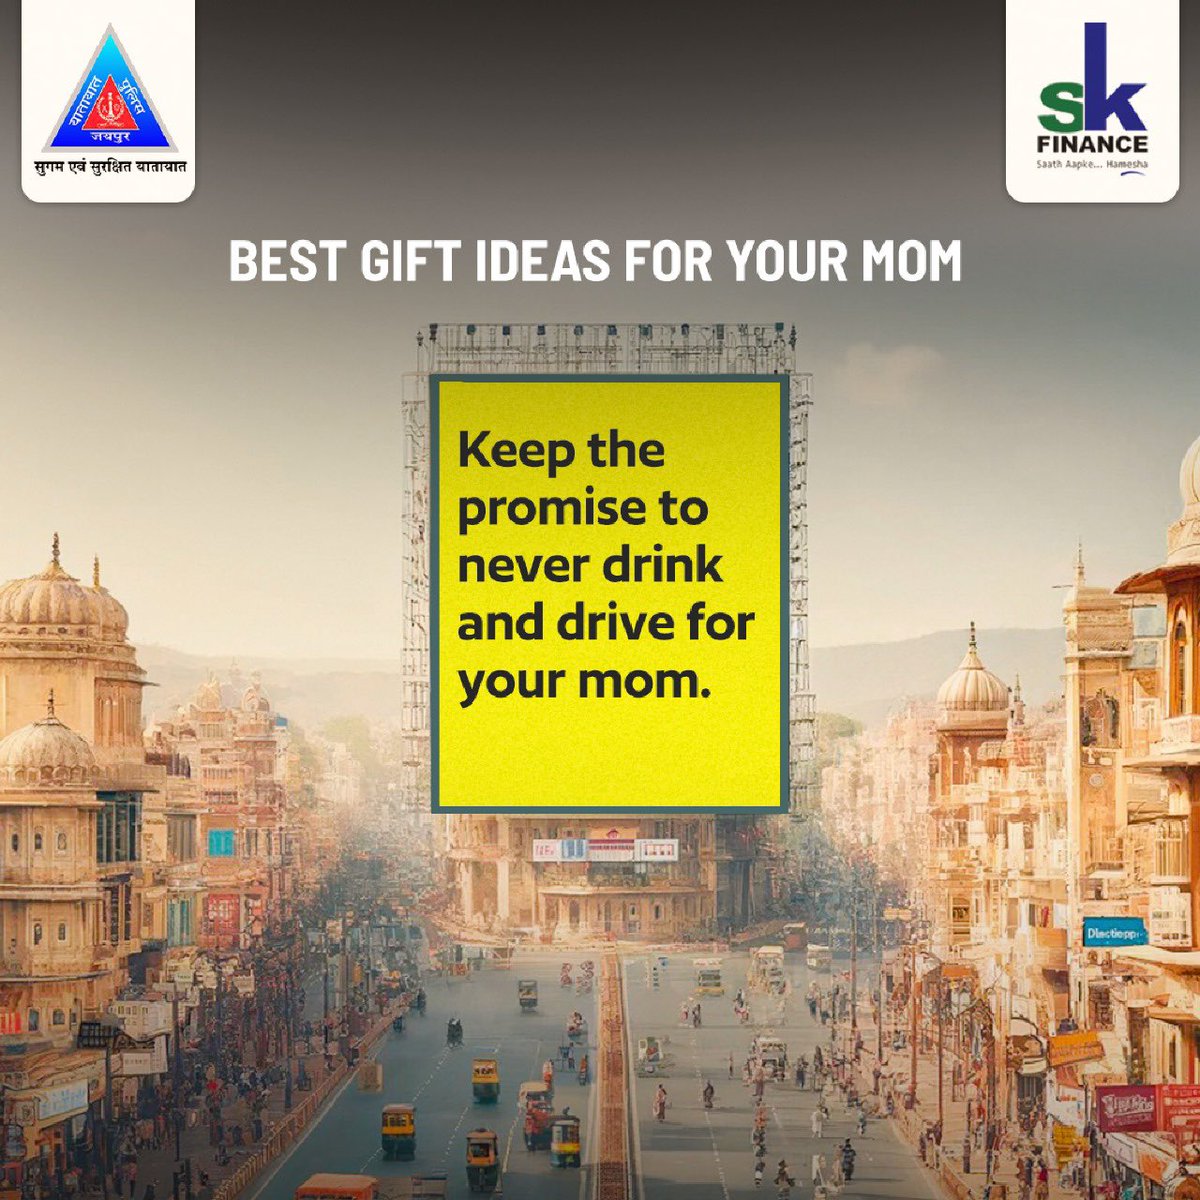 शराब पीकर गाड़ी चलाना आपकी माँ की चिंता बढ़ा सकता है, इसलिए अपनी सुरक्षा का ध्यान रखें और शराब पीकर गाड़ी ना चलाएं। 🍷🚫🚘

#JaipurTrafficPolice #DriveSafe #SafetyFirst #FollowTrafficRules #MothersDay #MomKnowsBest #MotherCare #TravelSafe #DontDrinkAndDrive